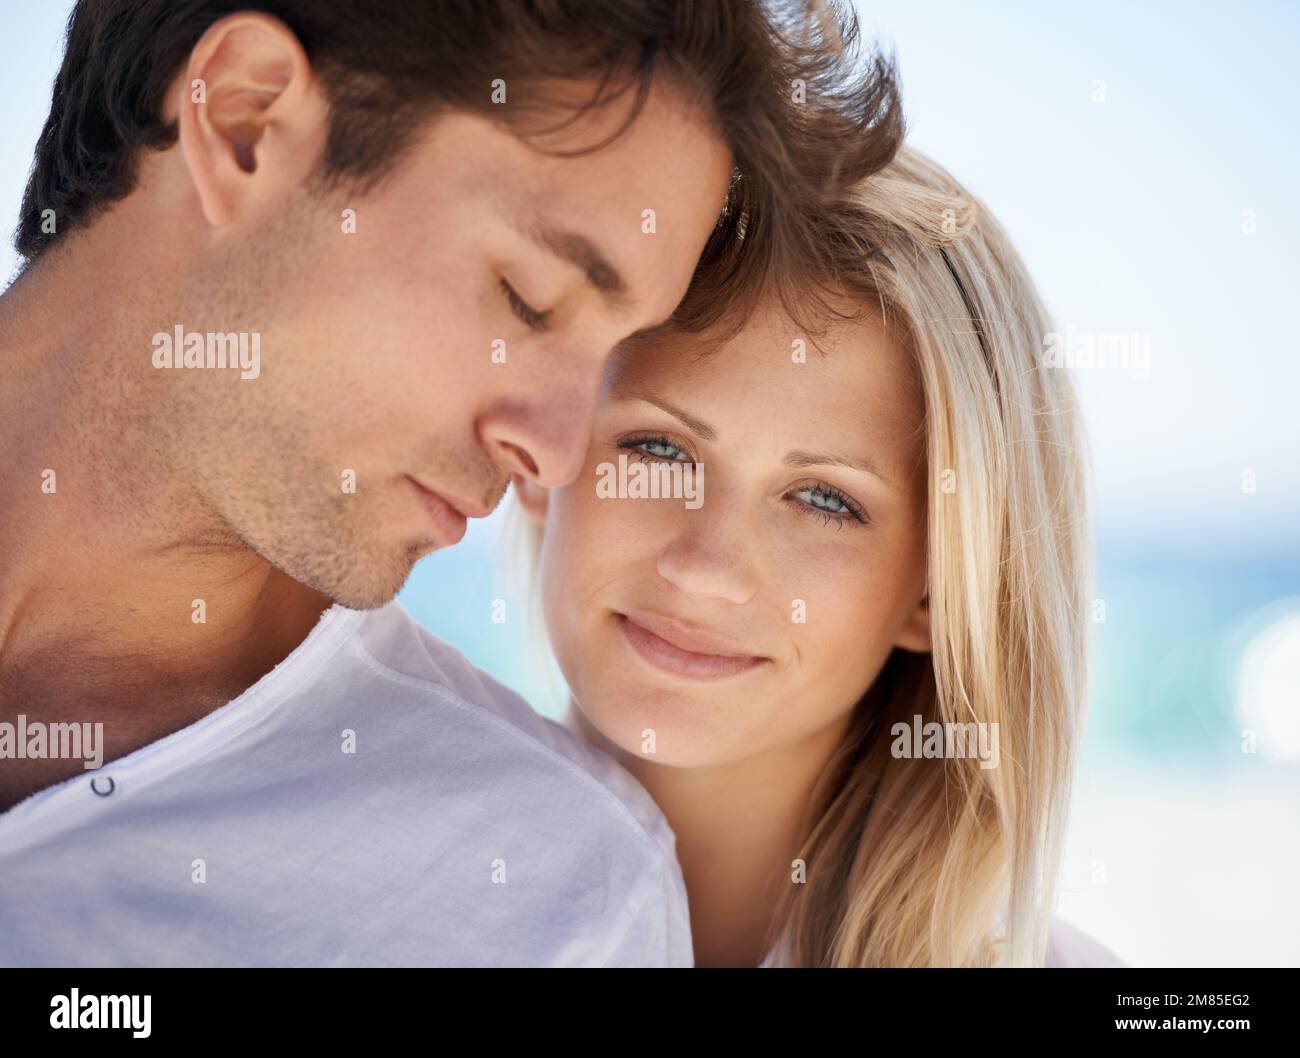 Sie sind perfekt füreinander. Ein junges Paar, das einen intimen Moment am Strand hat. Stockfoto